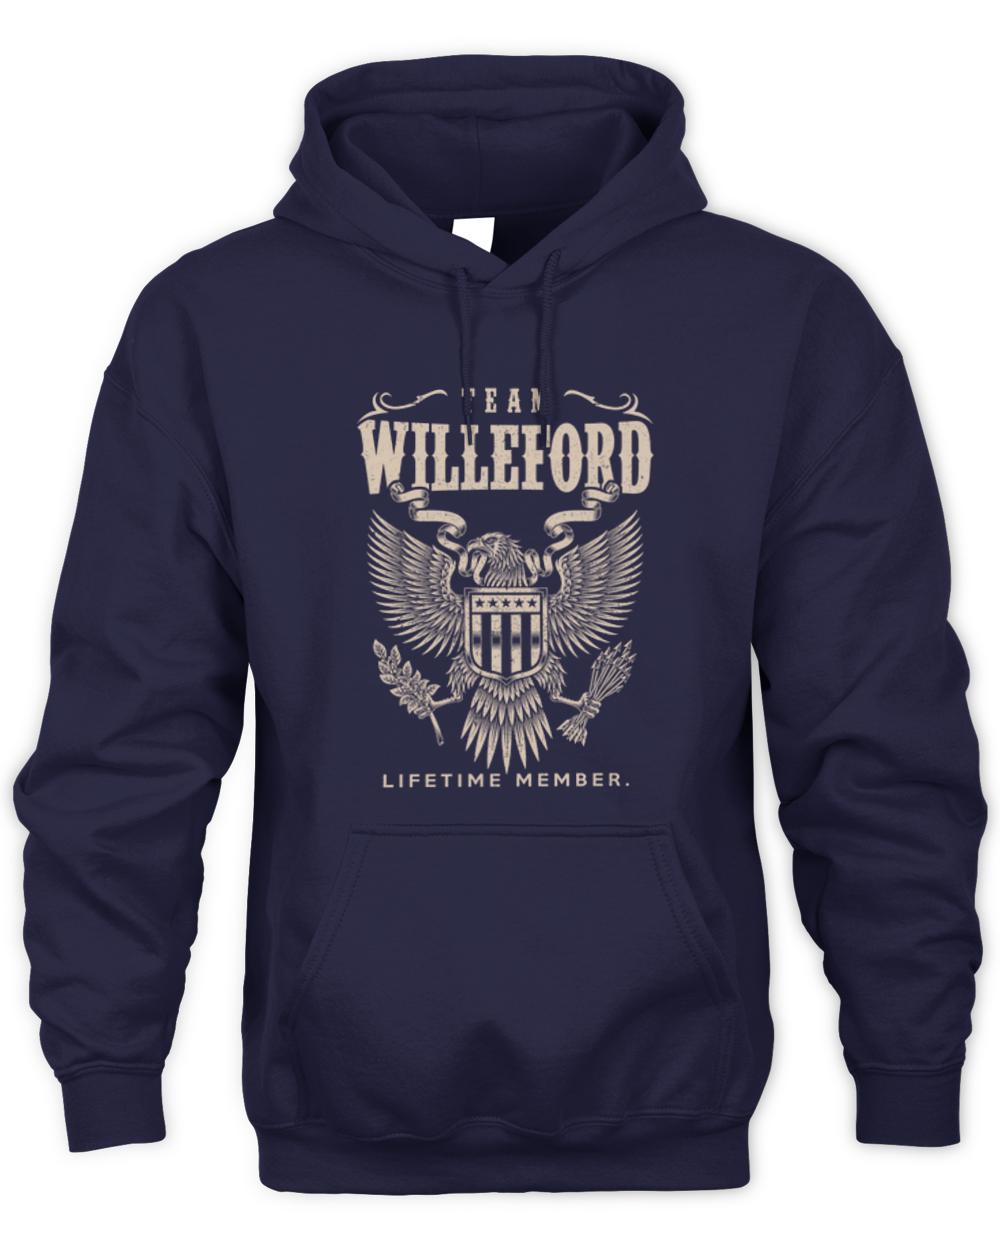 WILLEFORD